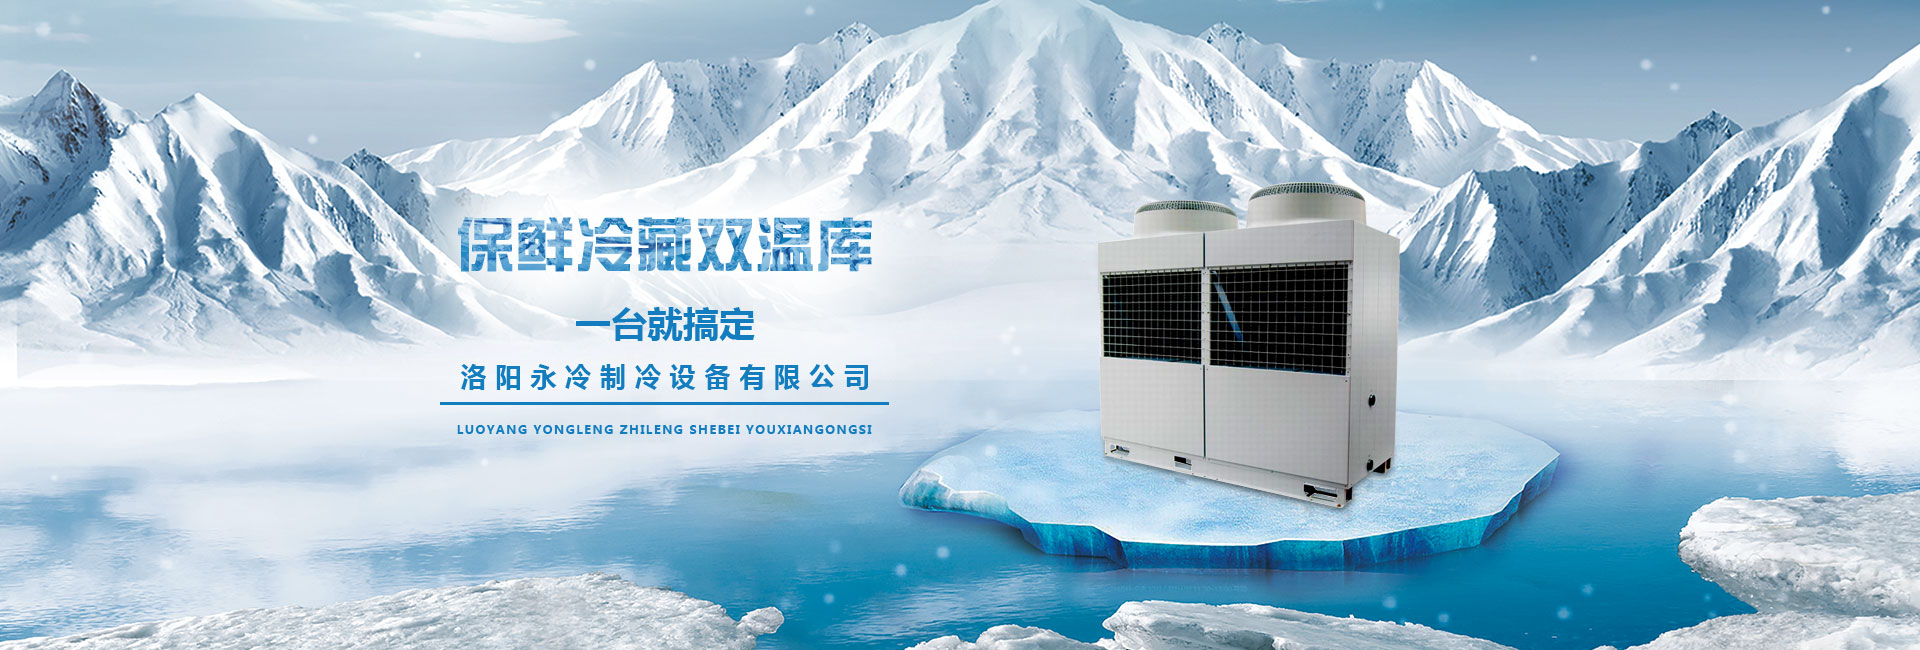 洛阳凯发k8国际制冷设备有限公司